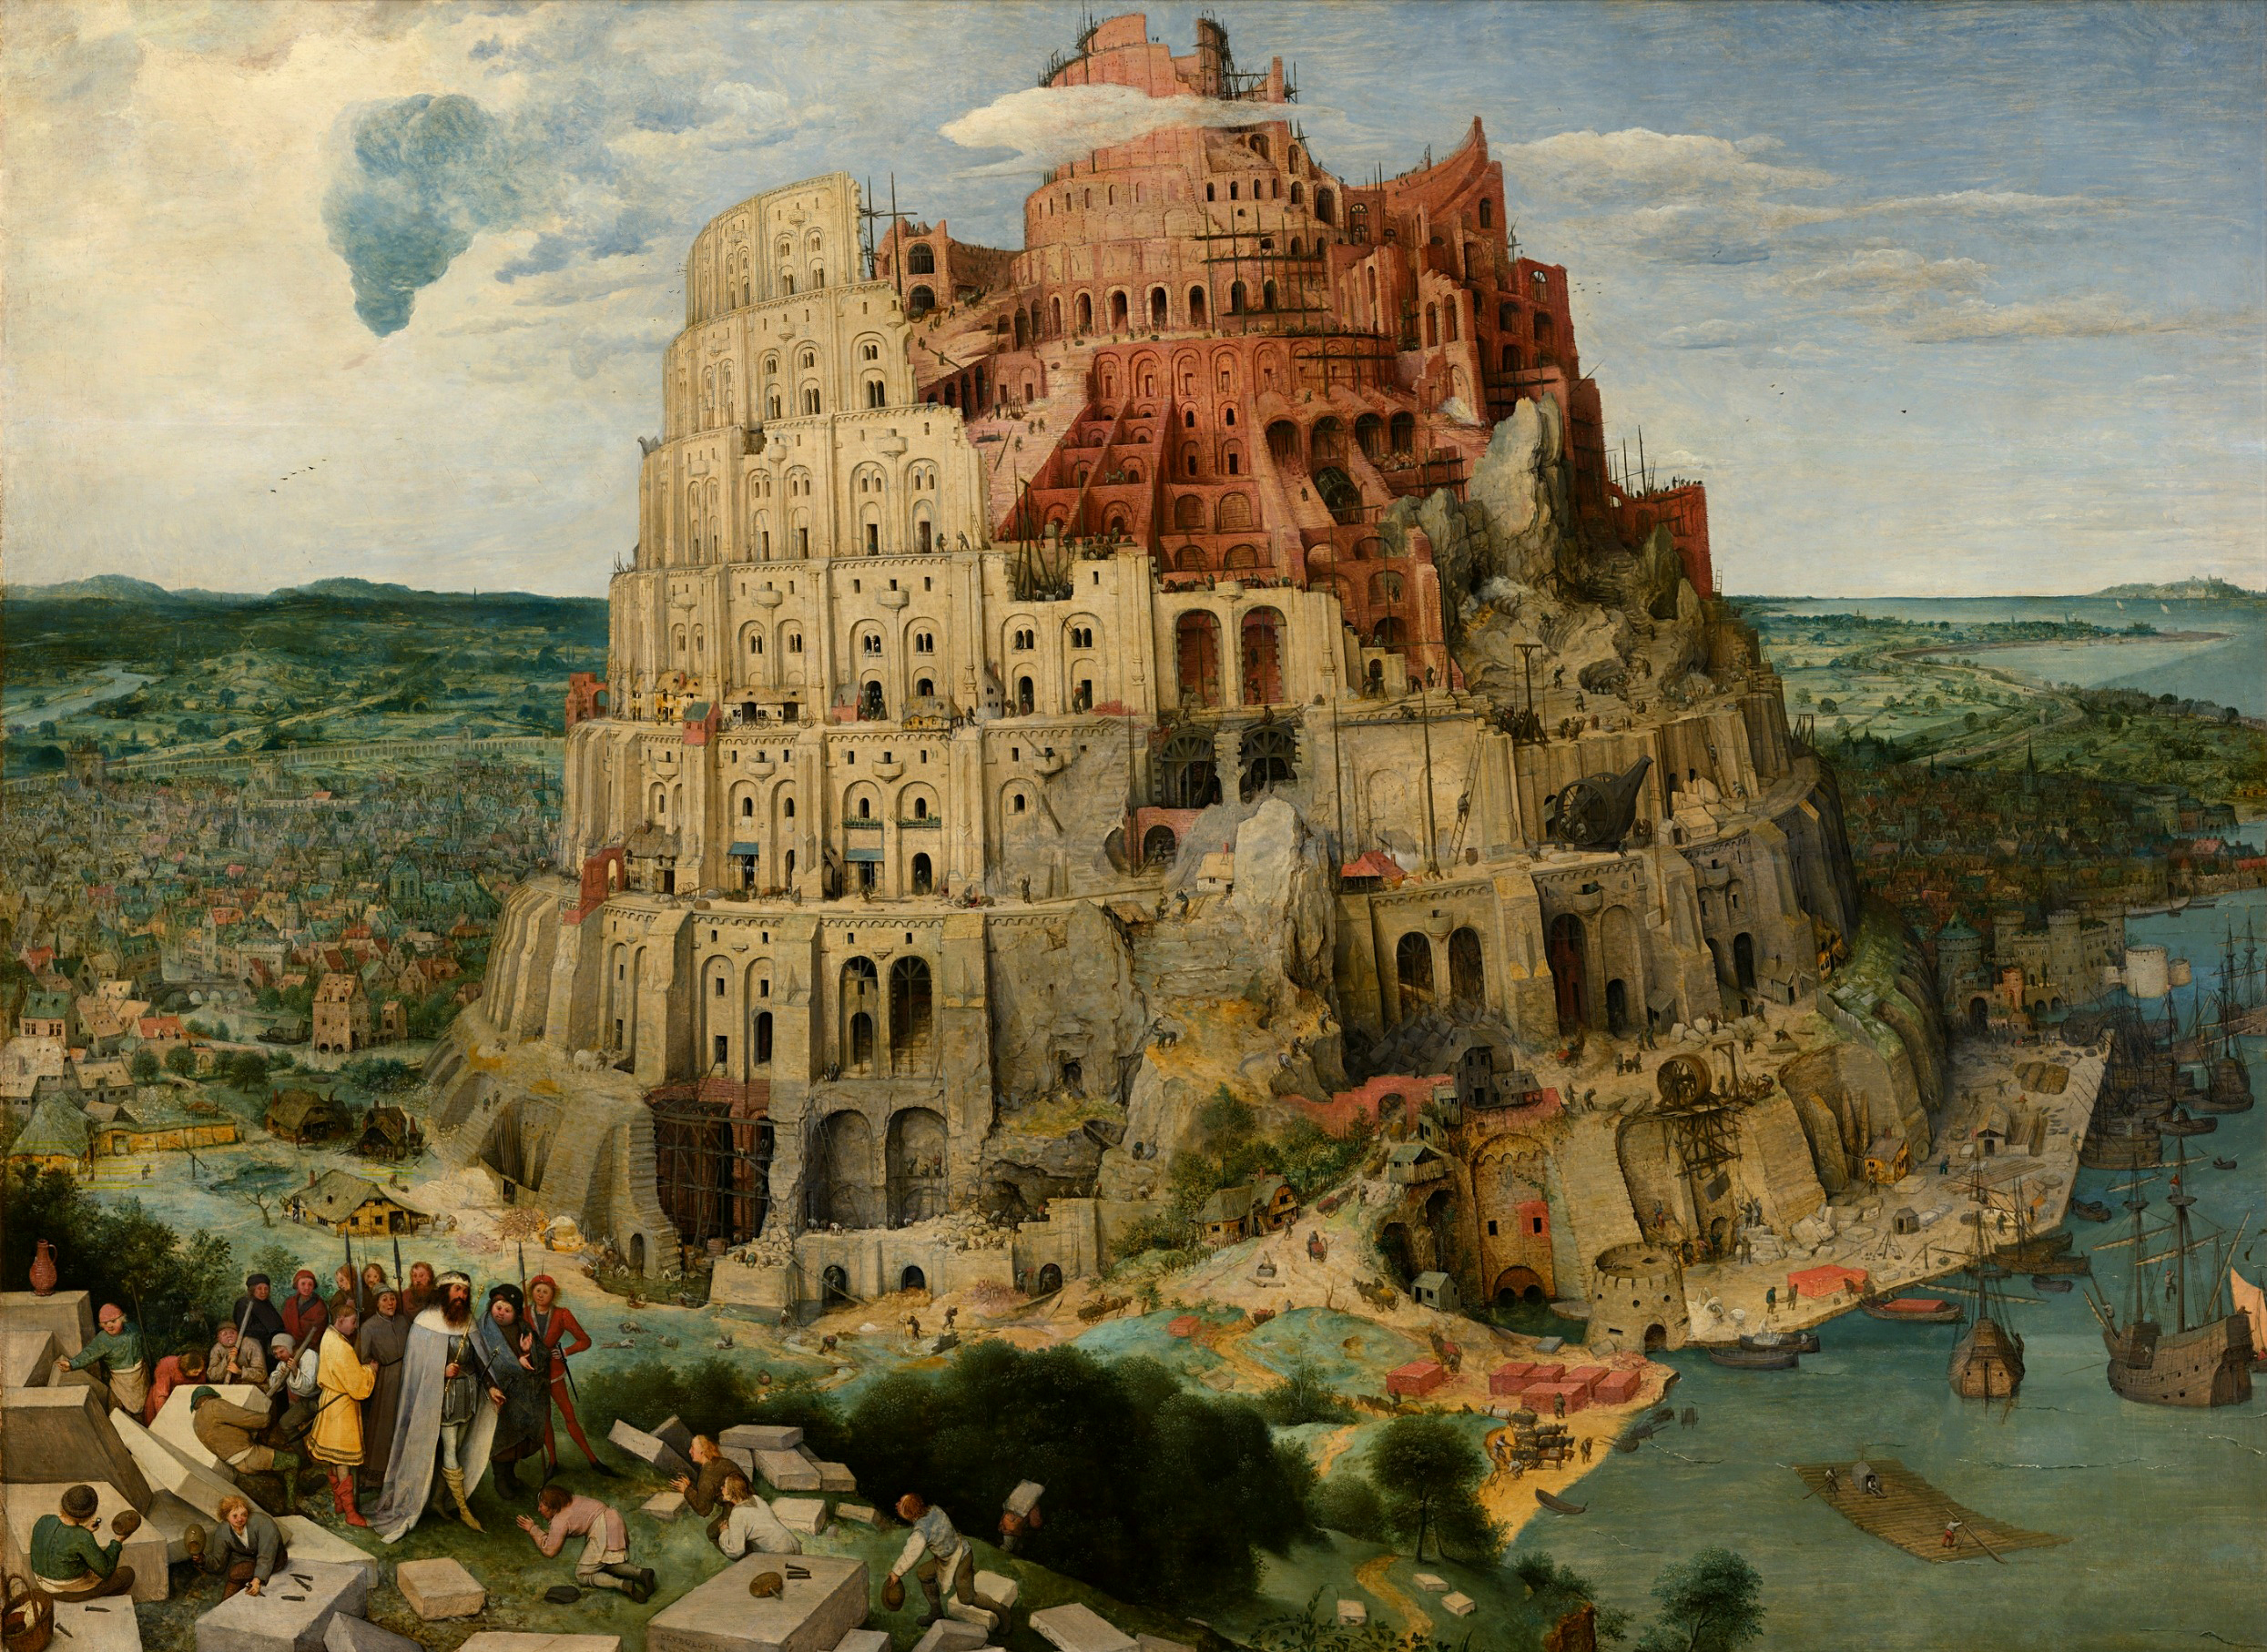 "The Tower of Babel" By Pieter Bruegel the Elder